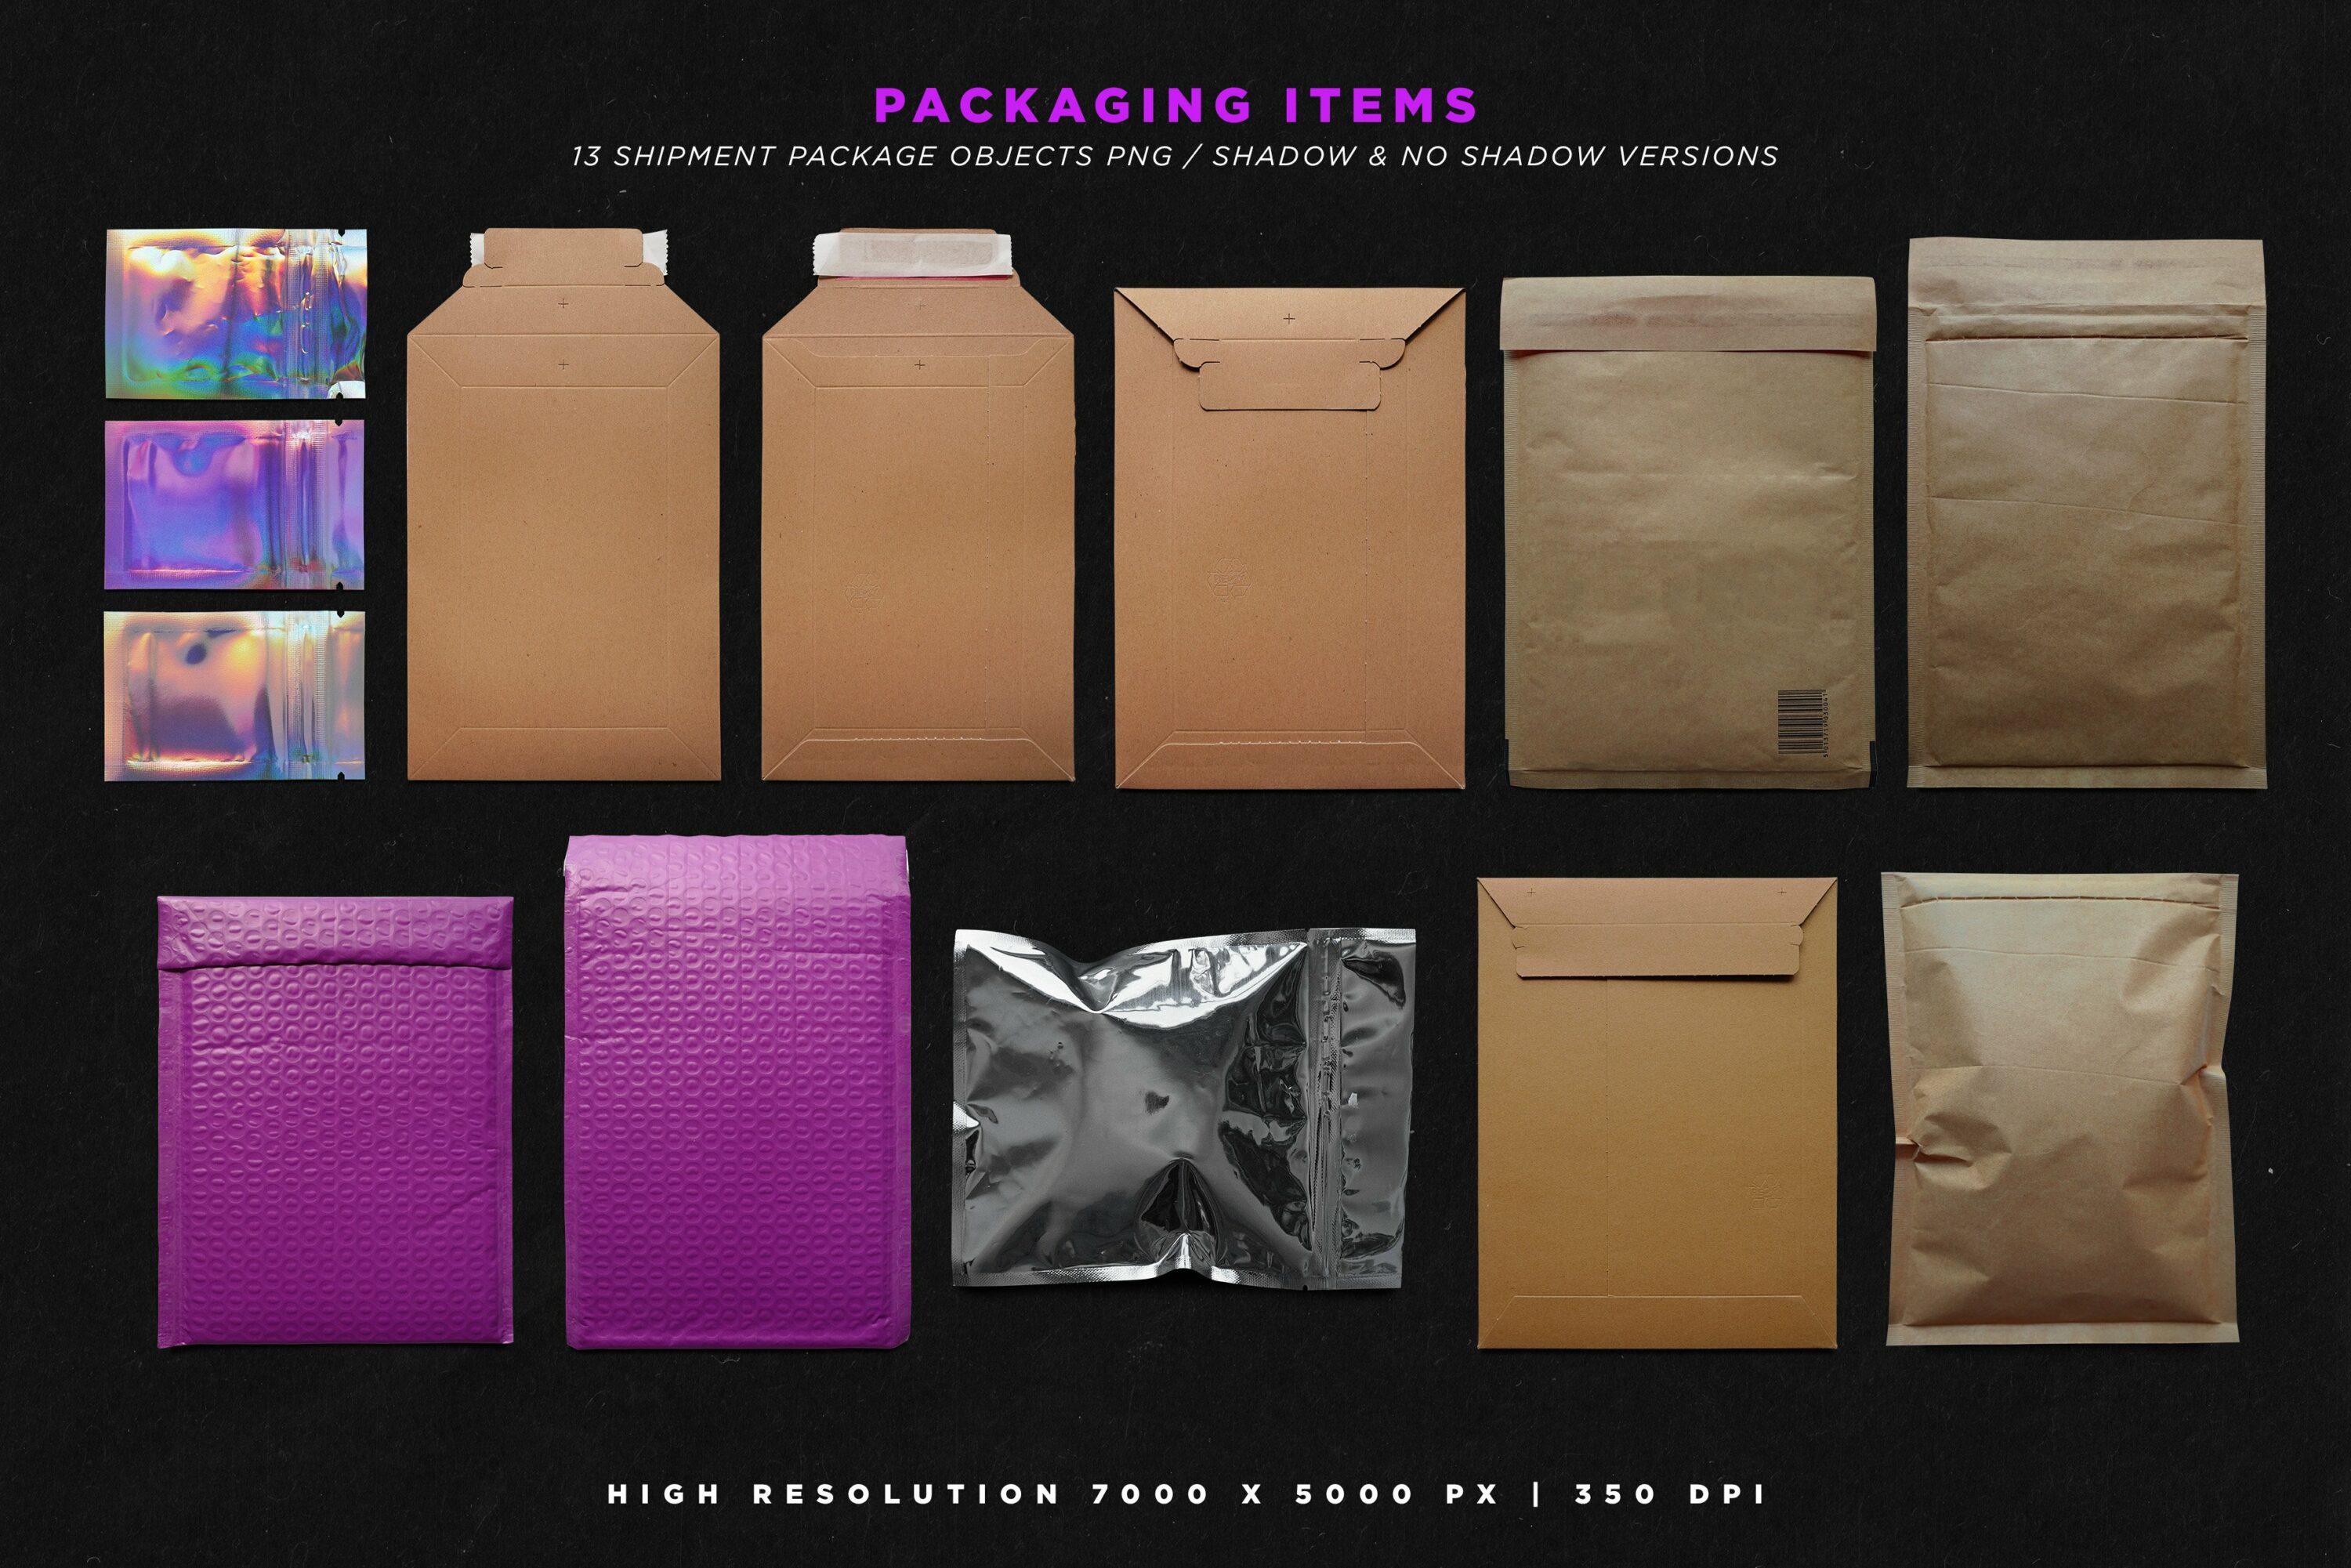 Packaging items.